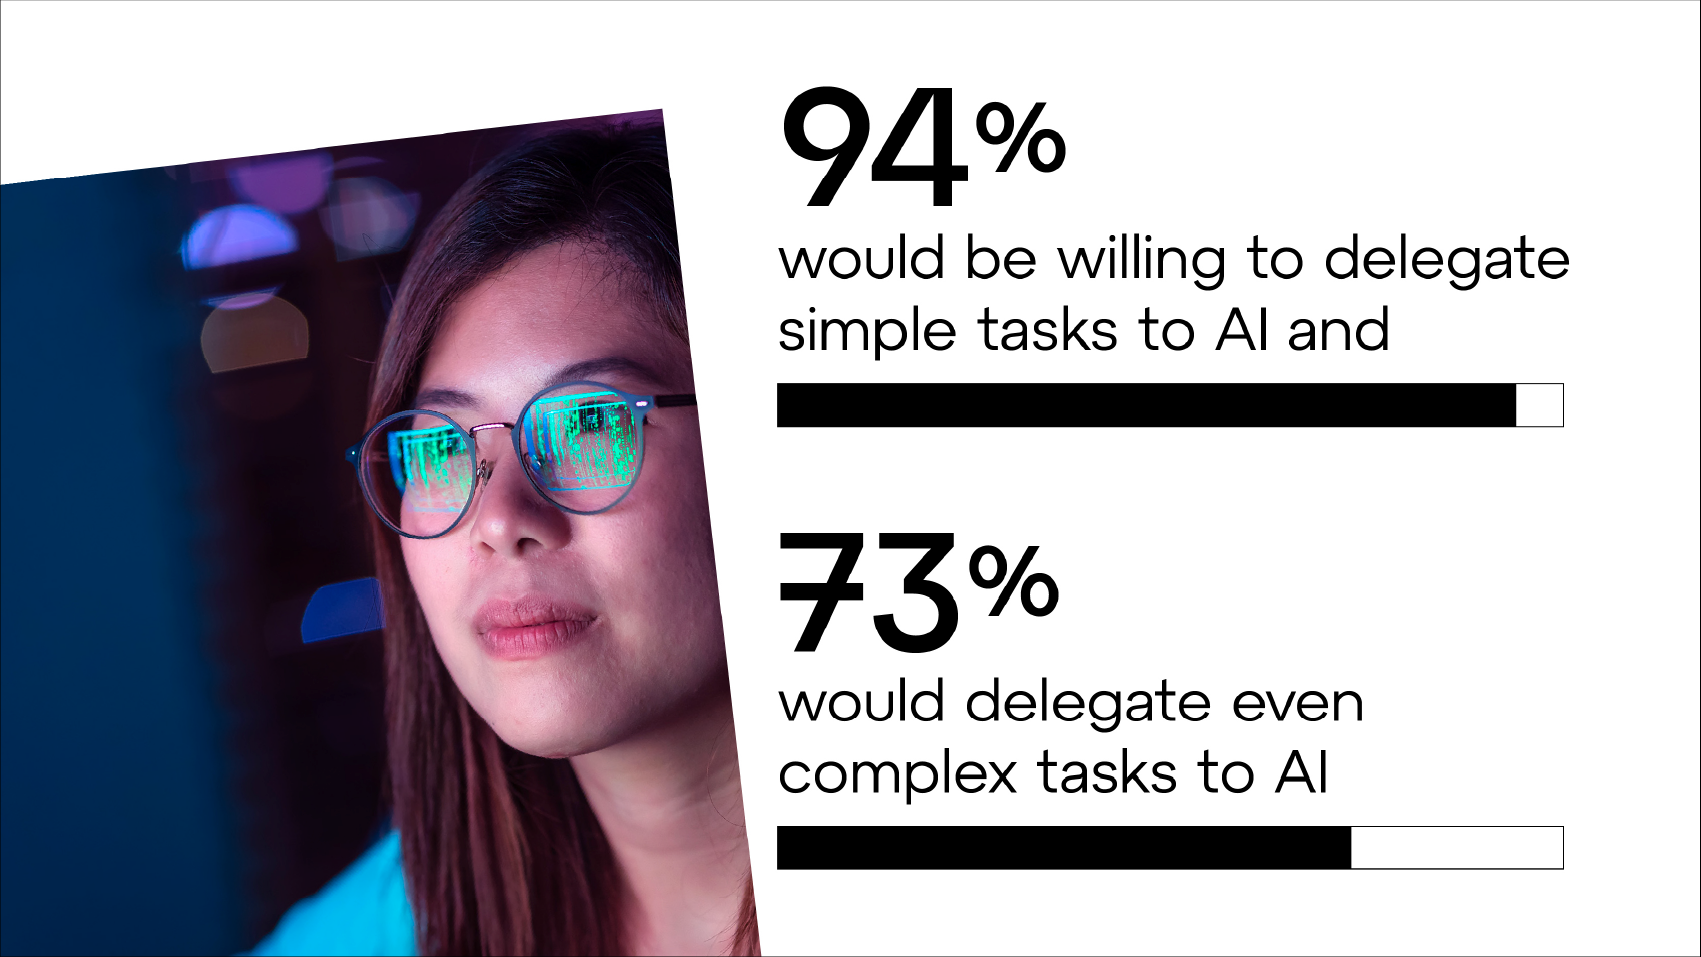 94% is bereid om simpele taken over te laten aan AI, en 73% zou dit ook doen met ingewikkeldere taken.